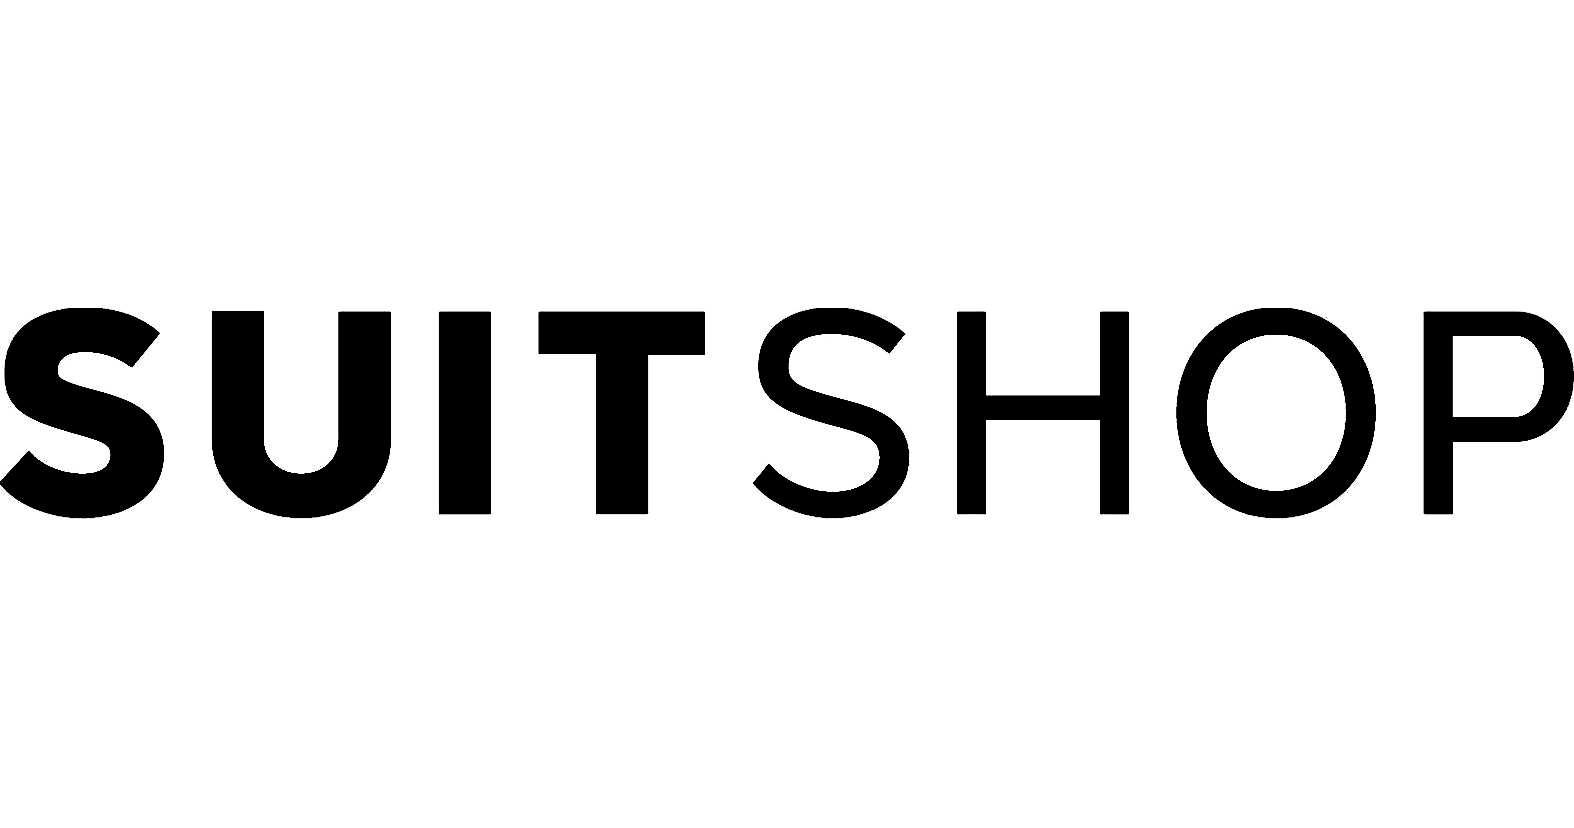 SuitShop Logo_BLACK